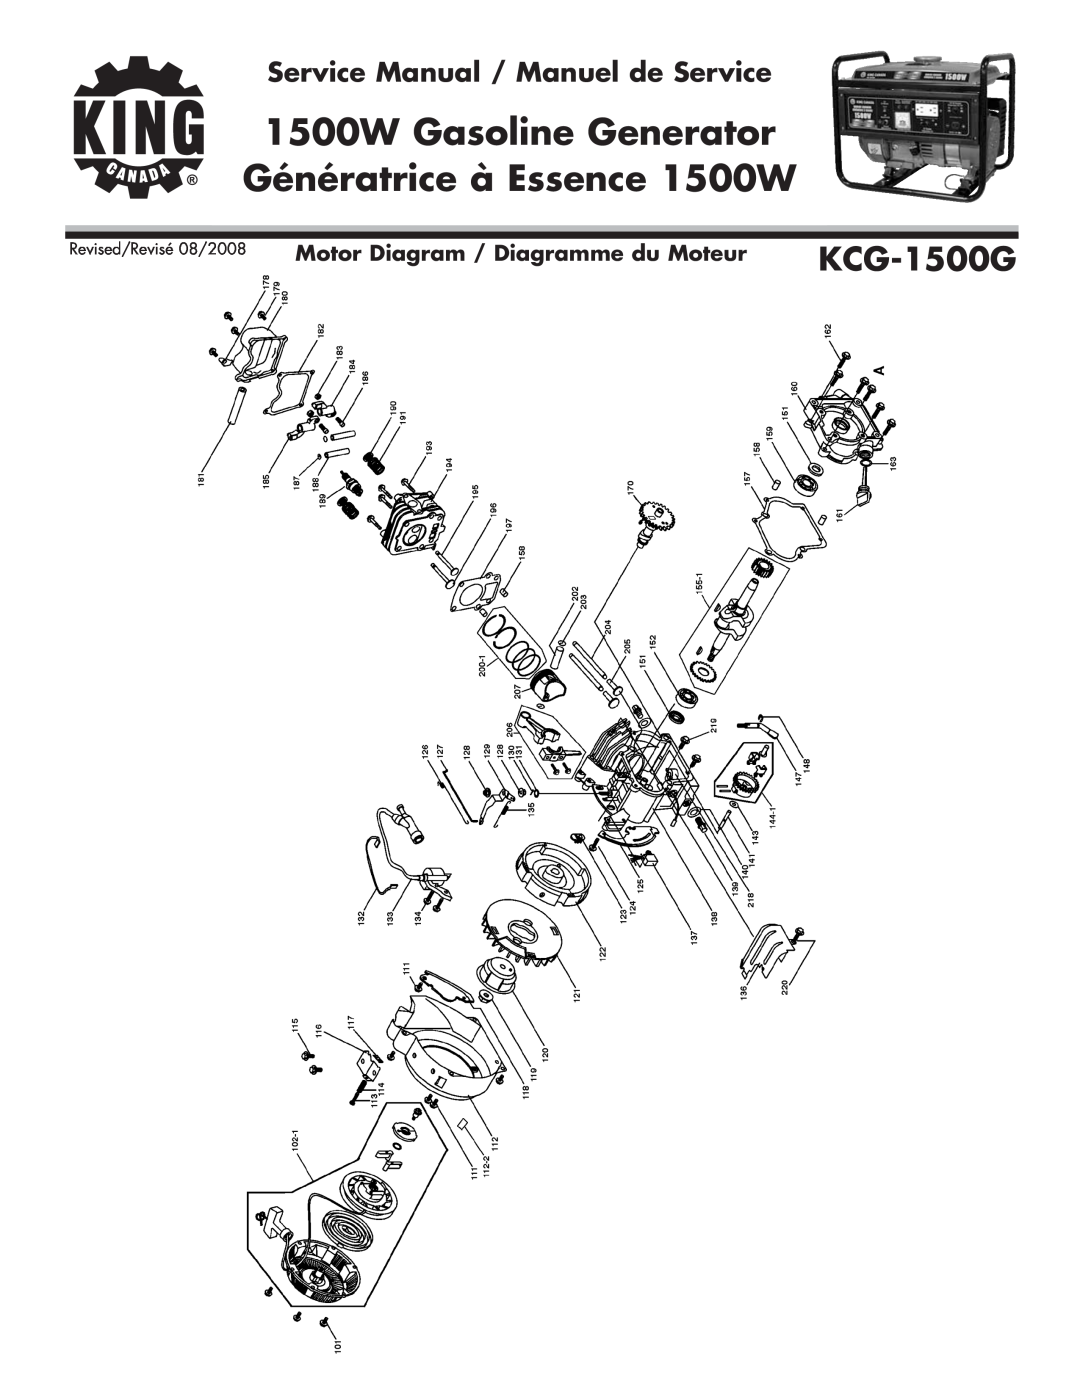 King Canada KCG-1500G Motor Diagram / Diagramme du Moteur, 1500W Gasoline Generator, Génératrice à Essence 1500W 